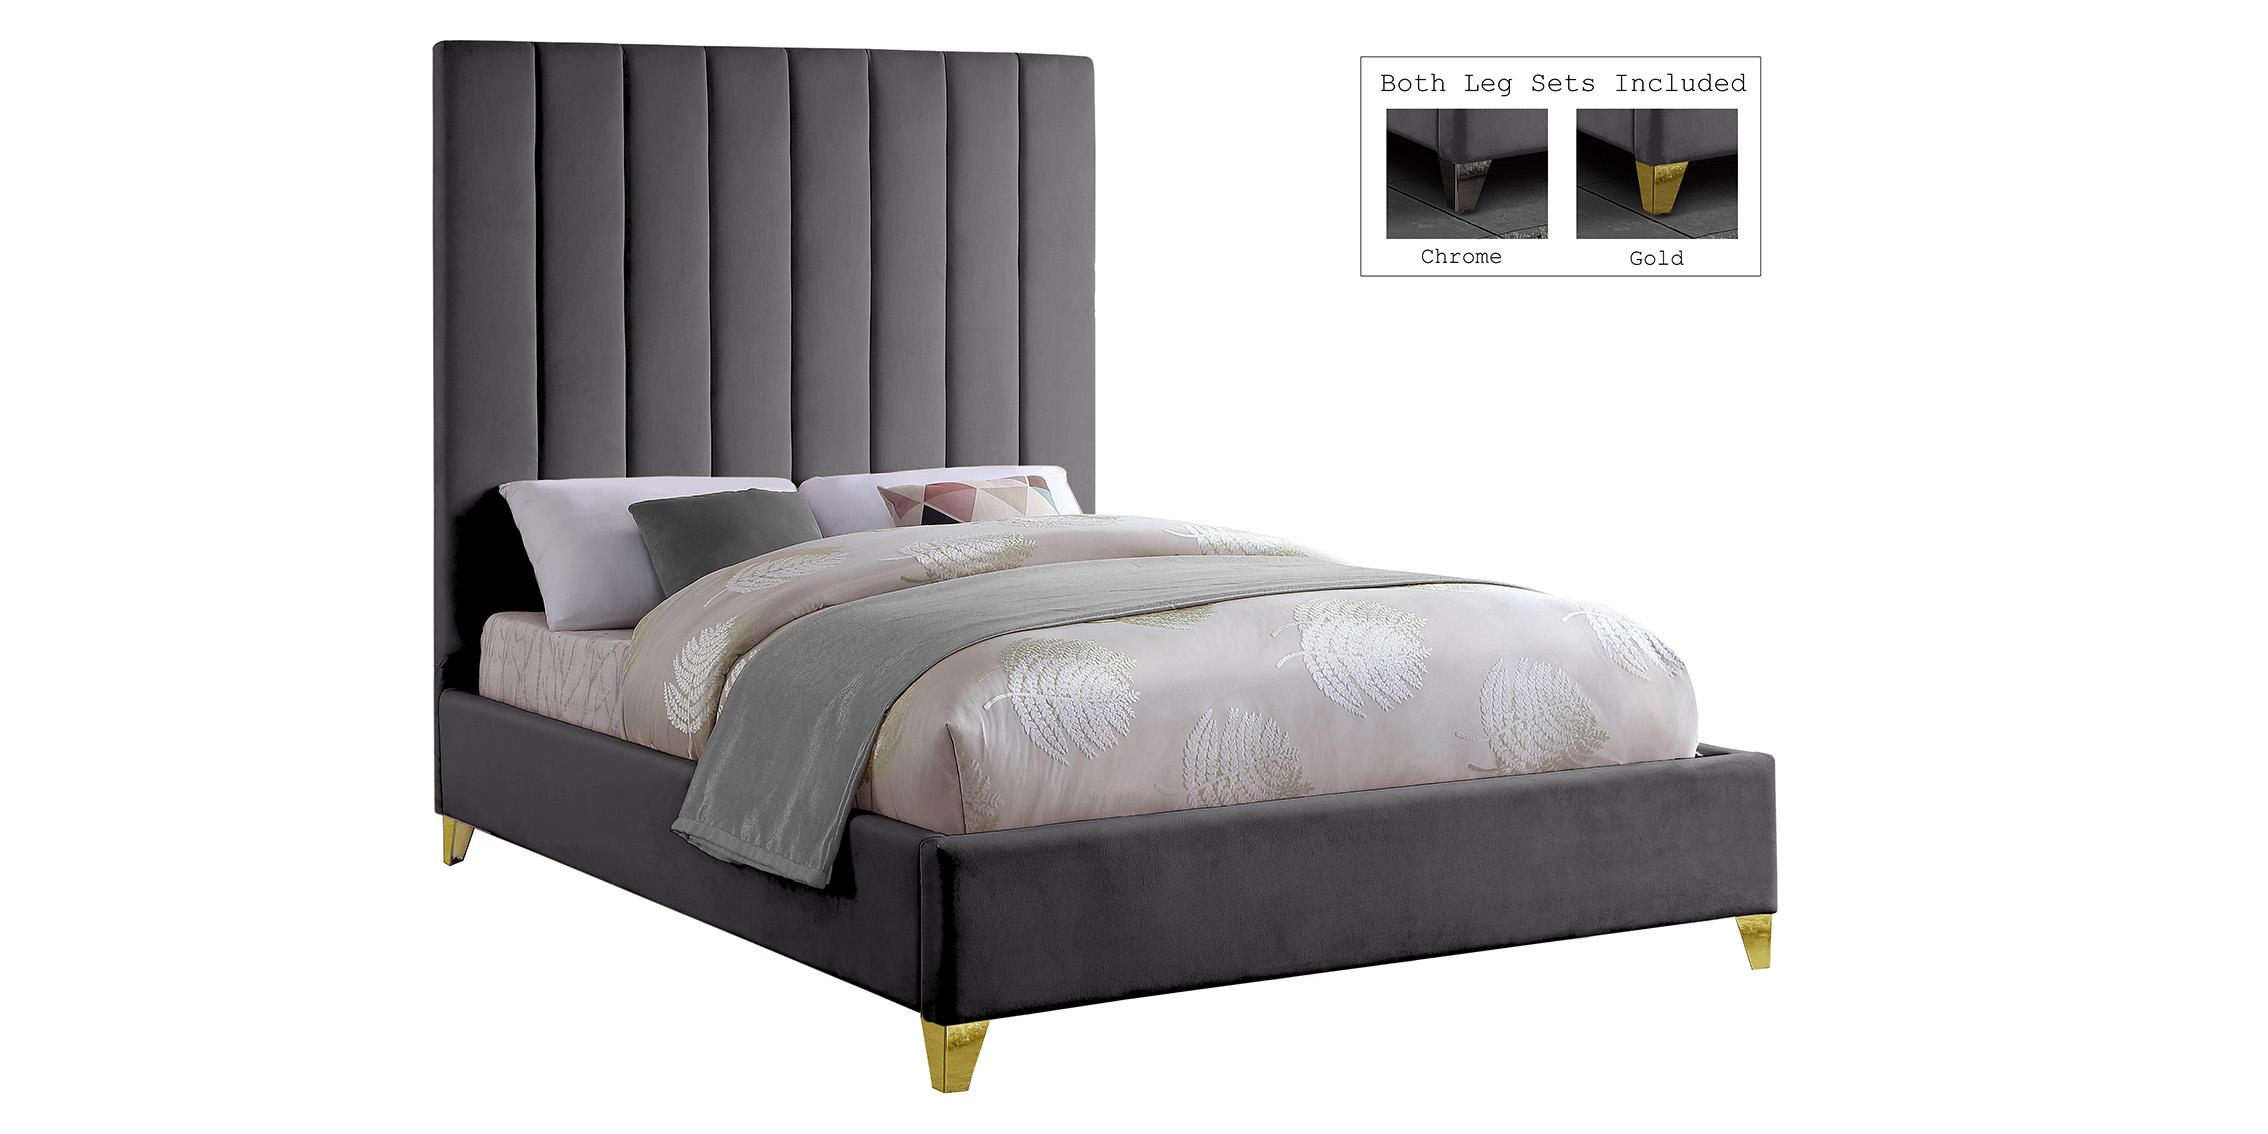 

    
ViaGrey-K Meridian Furniture Platform Bed
